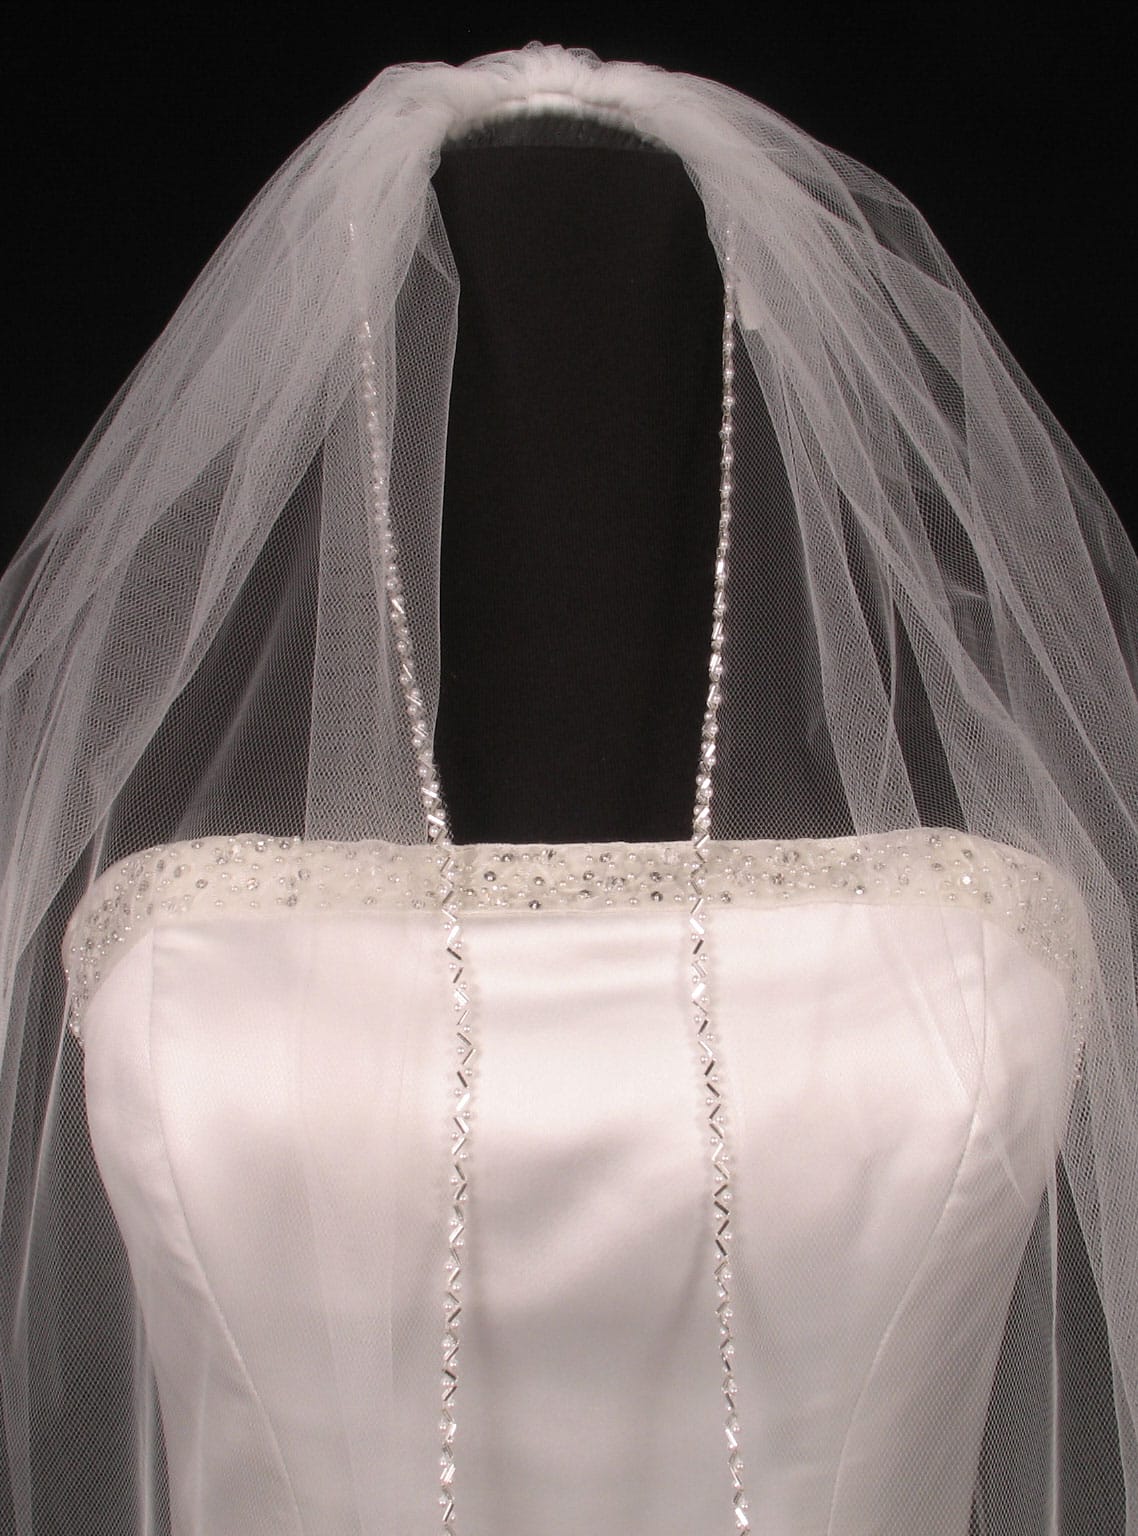 S3008VL Diamond White Fingertip Length Bridal Veil